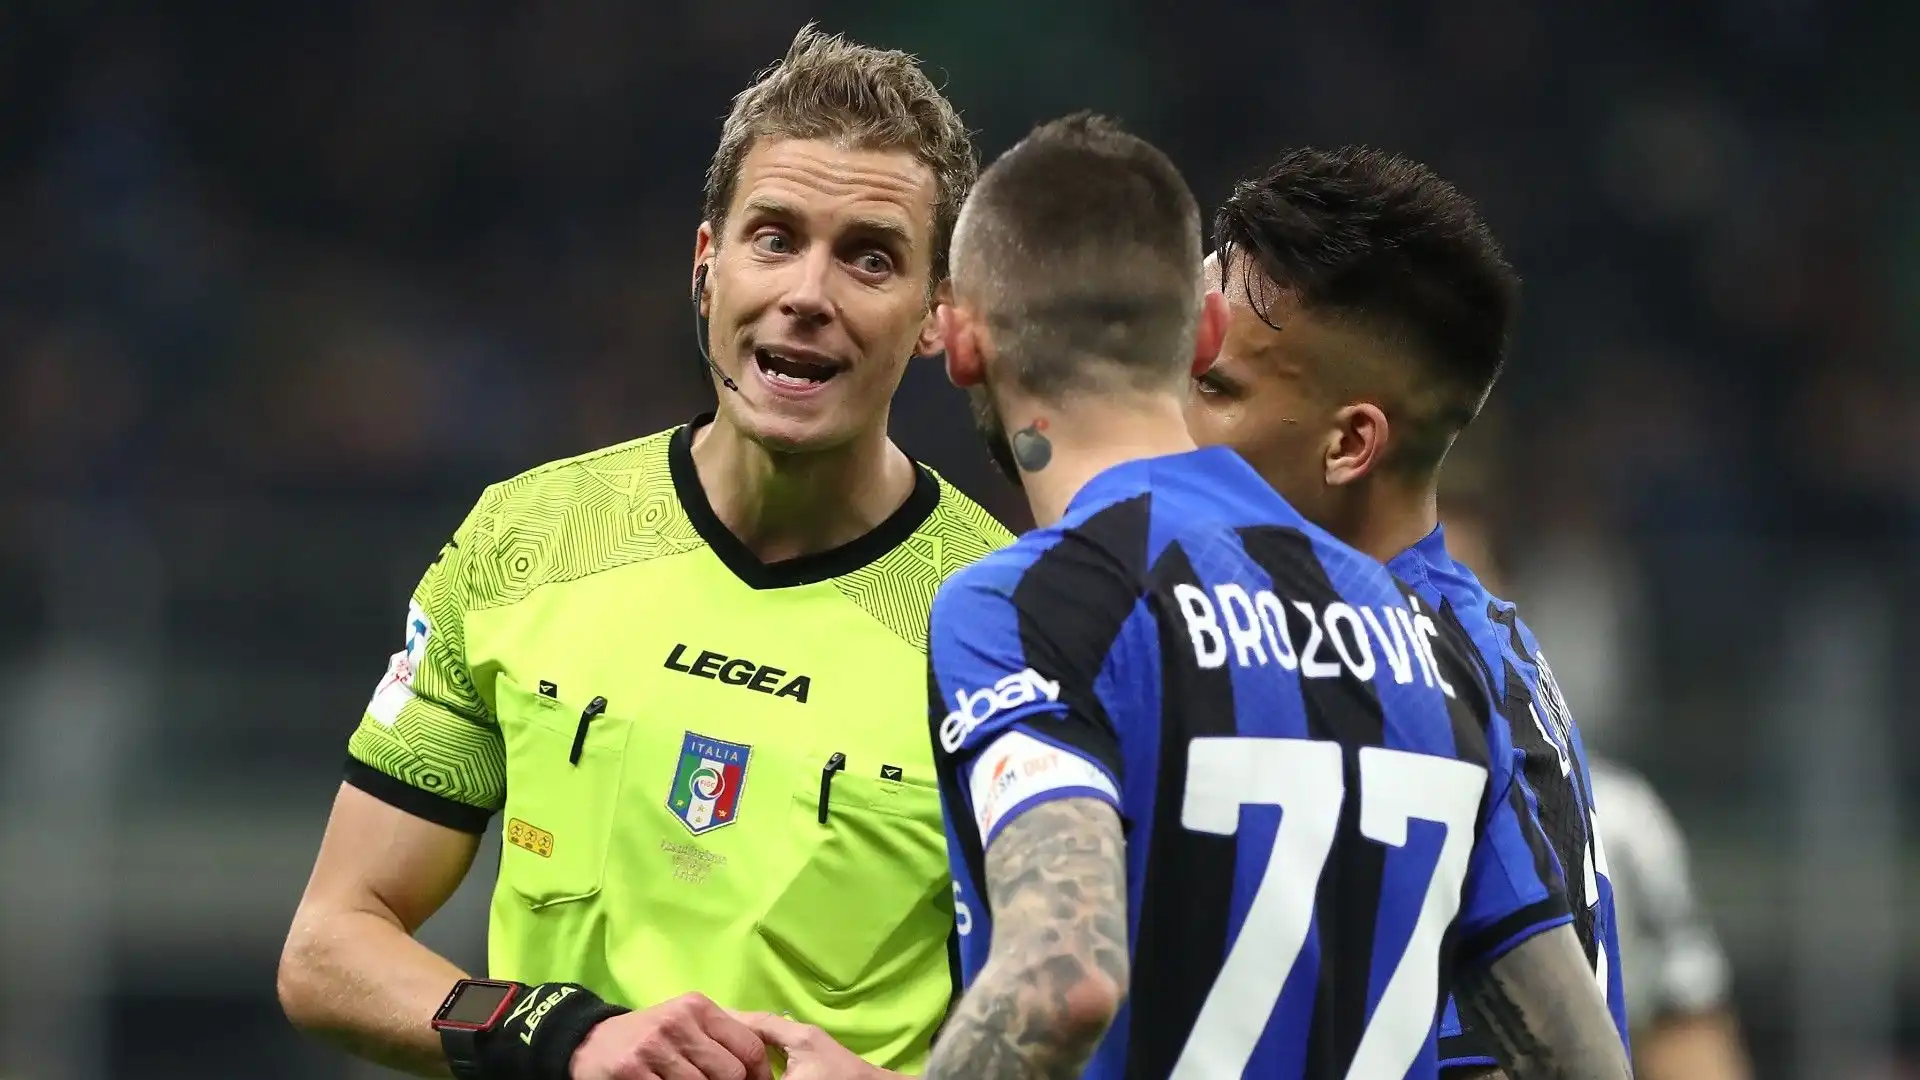 Per la giusta offerta, l'Inter è disposta a vendere Brozovic